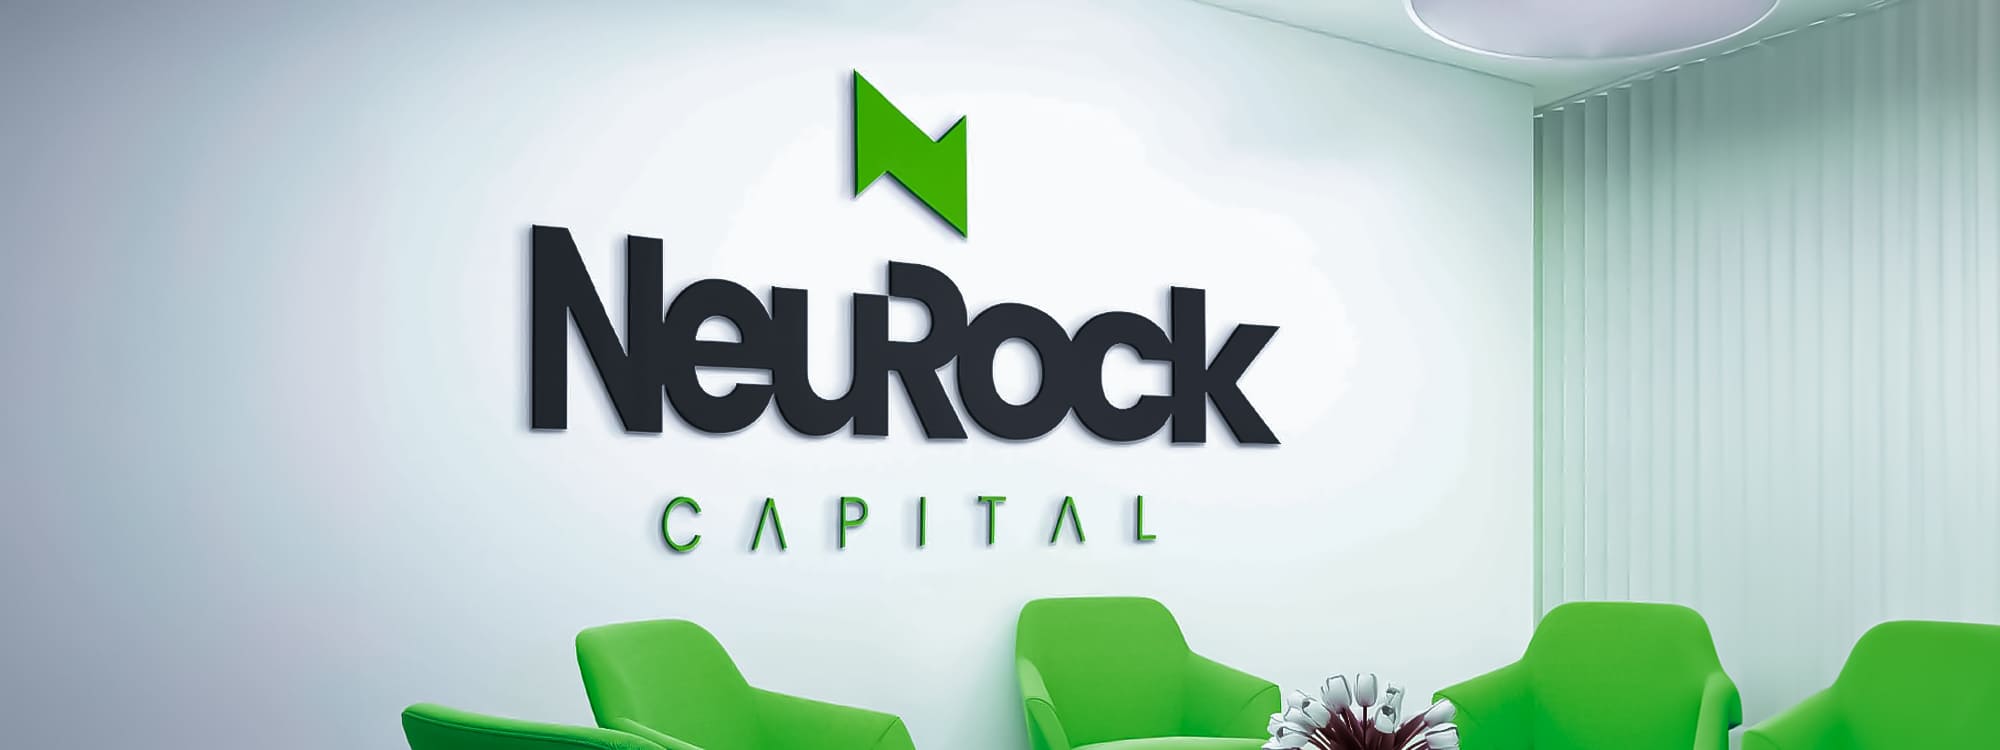 Neurock Capital Banner 2